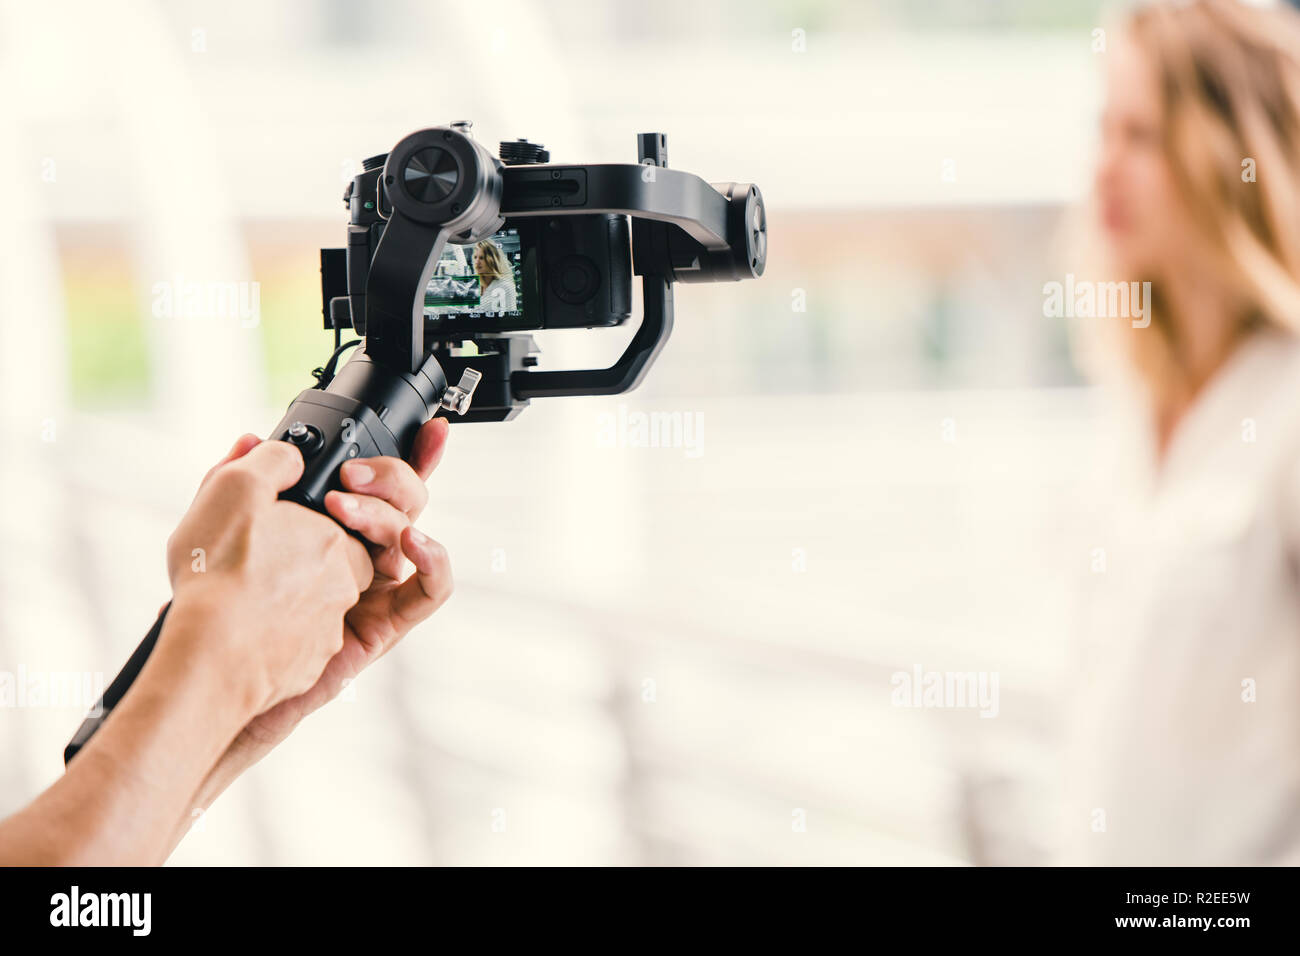 Sospensione cardanica motorizzato, videografo utilizzando la fotocamera reflex digitale anti shake strumento stabilizzatore per registrare video scena. Foto Stock